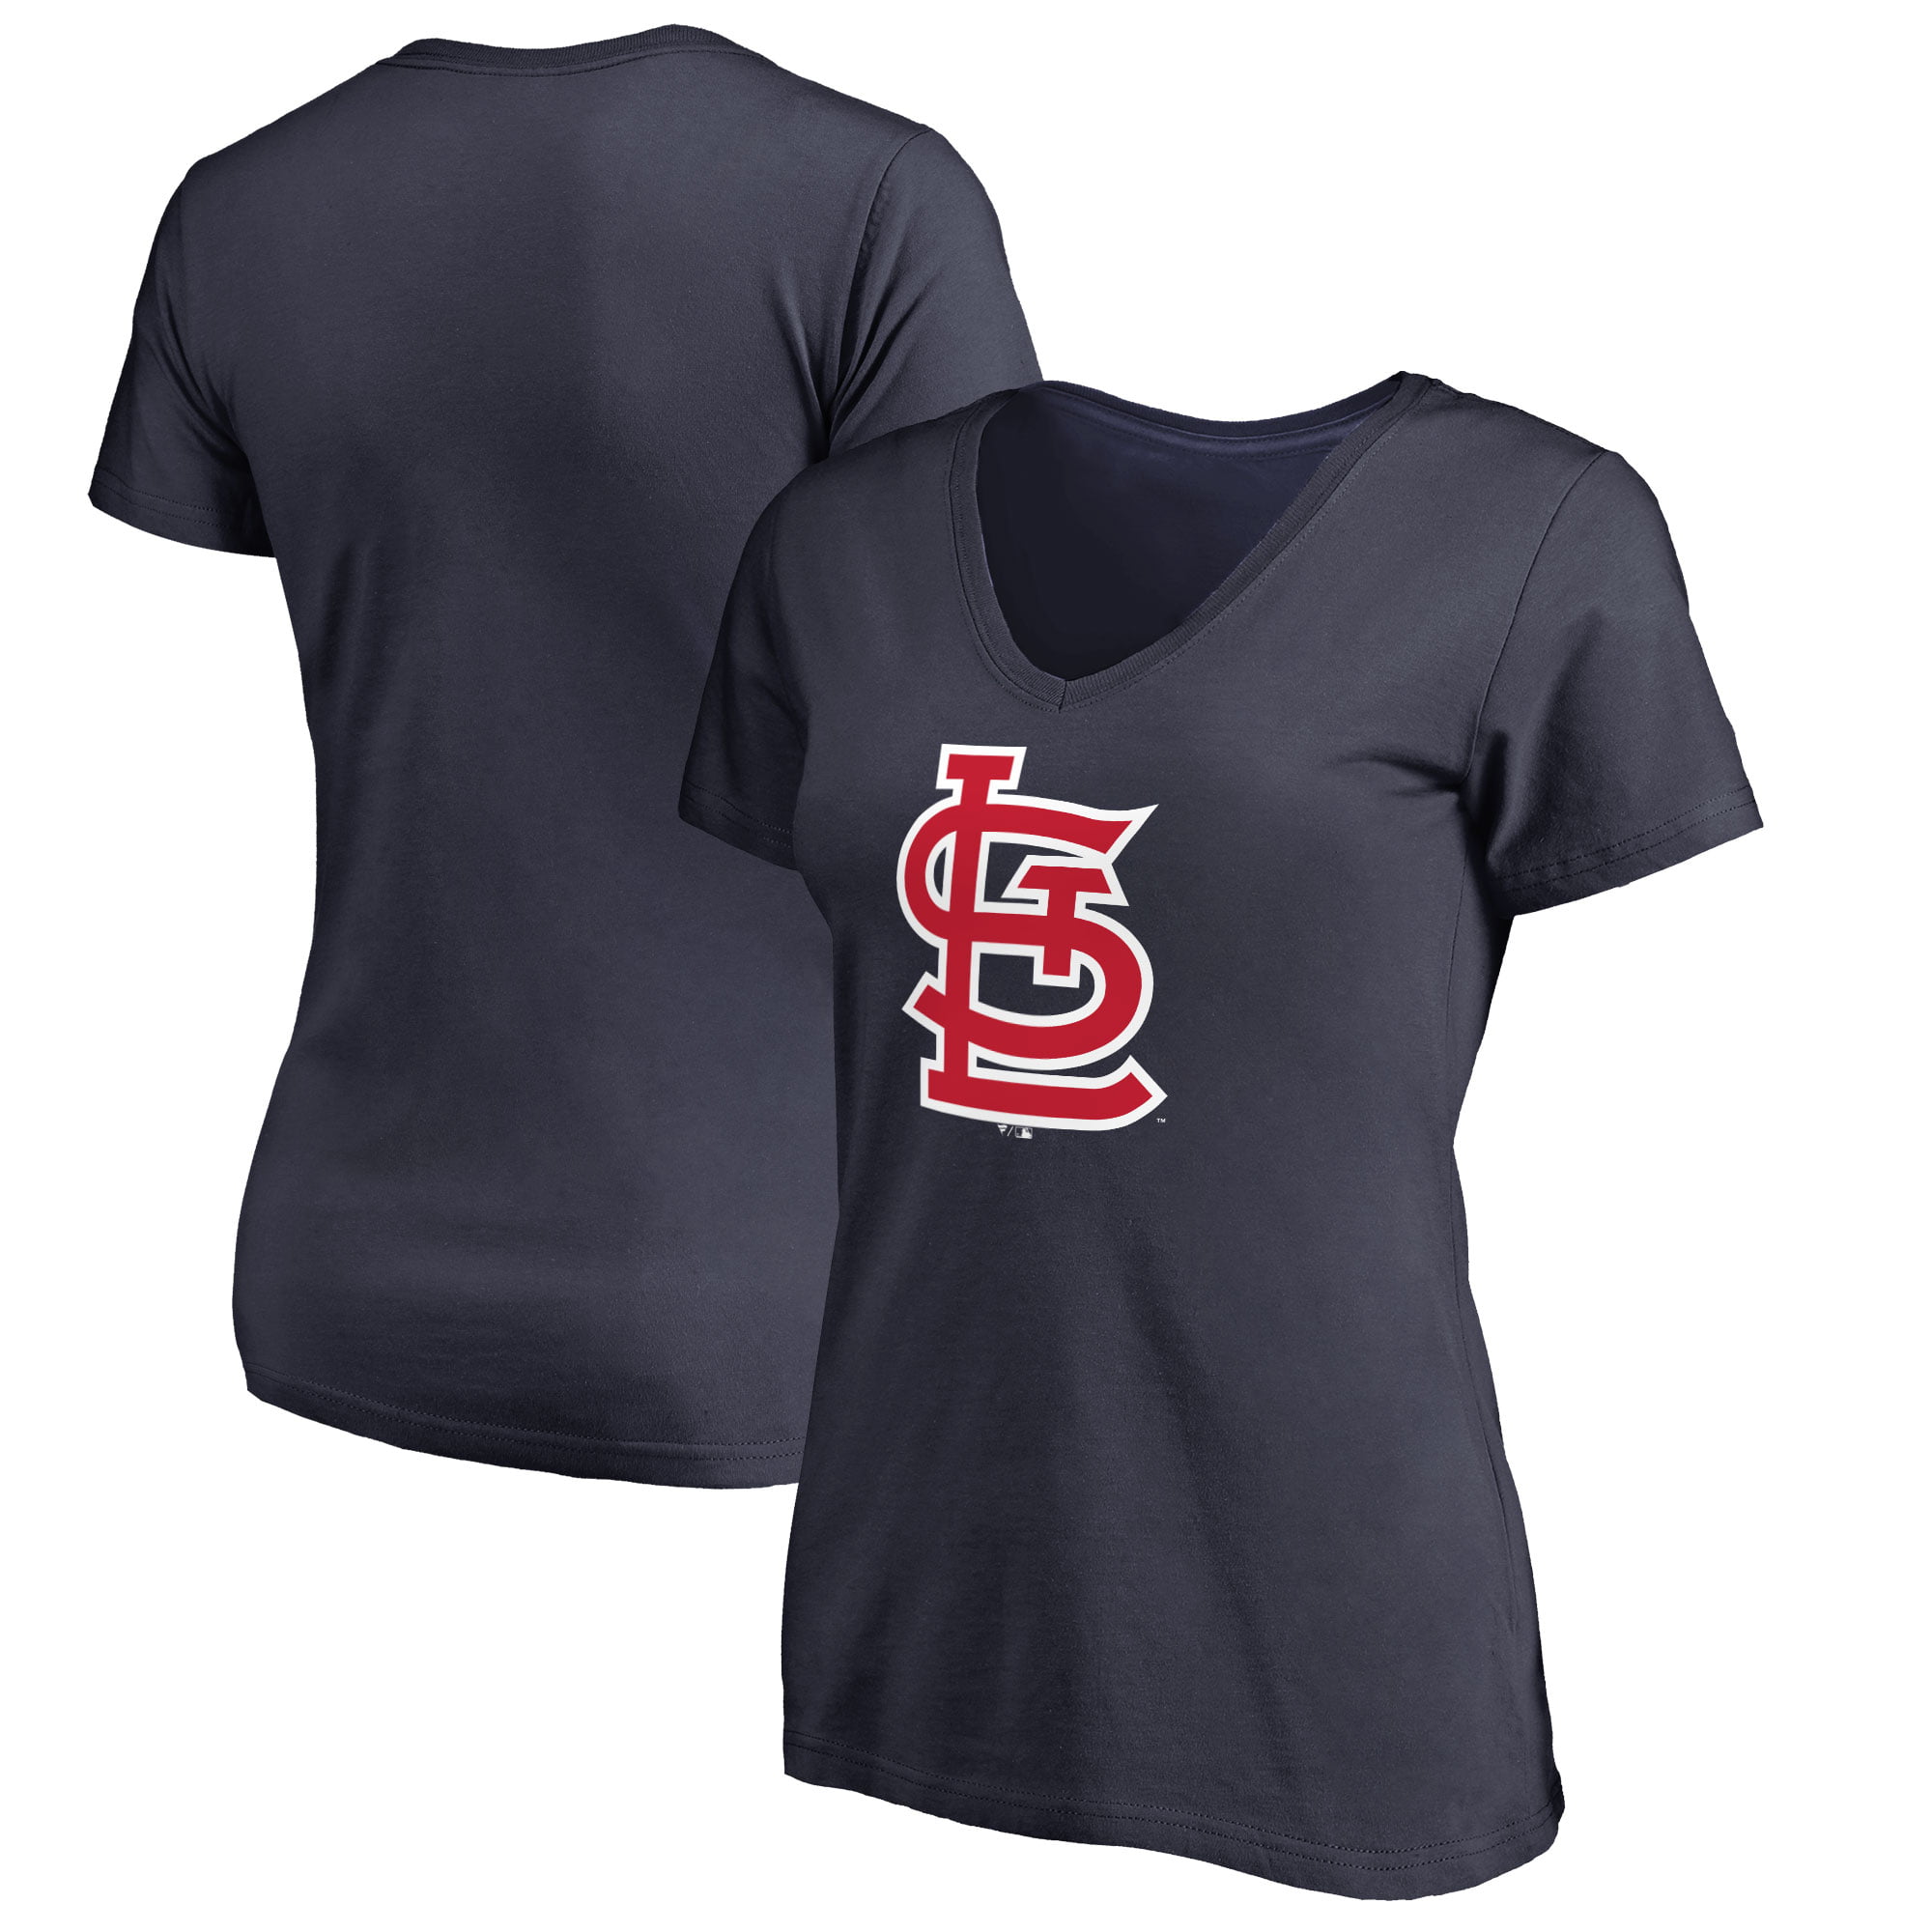 st louis cardinals women's plus size shirts